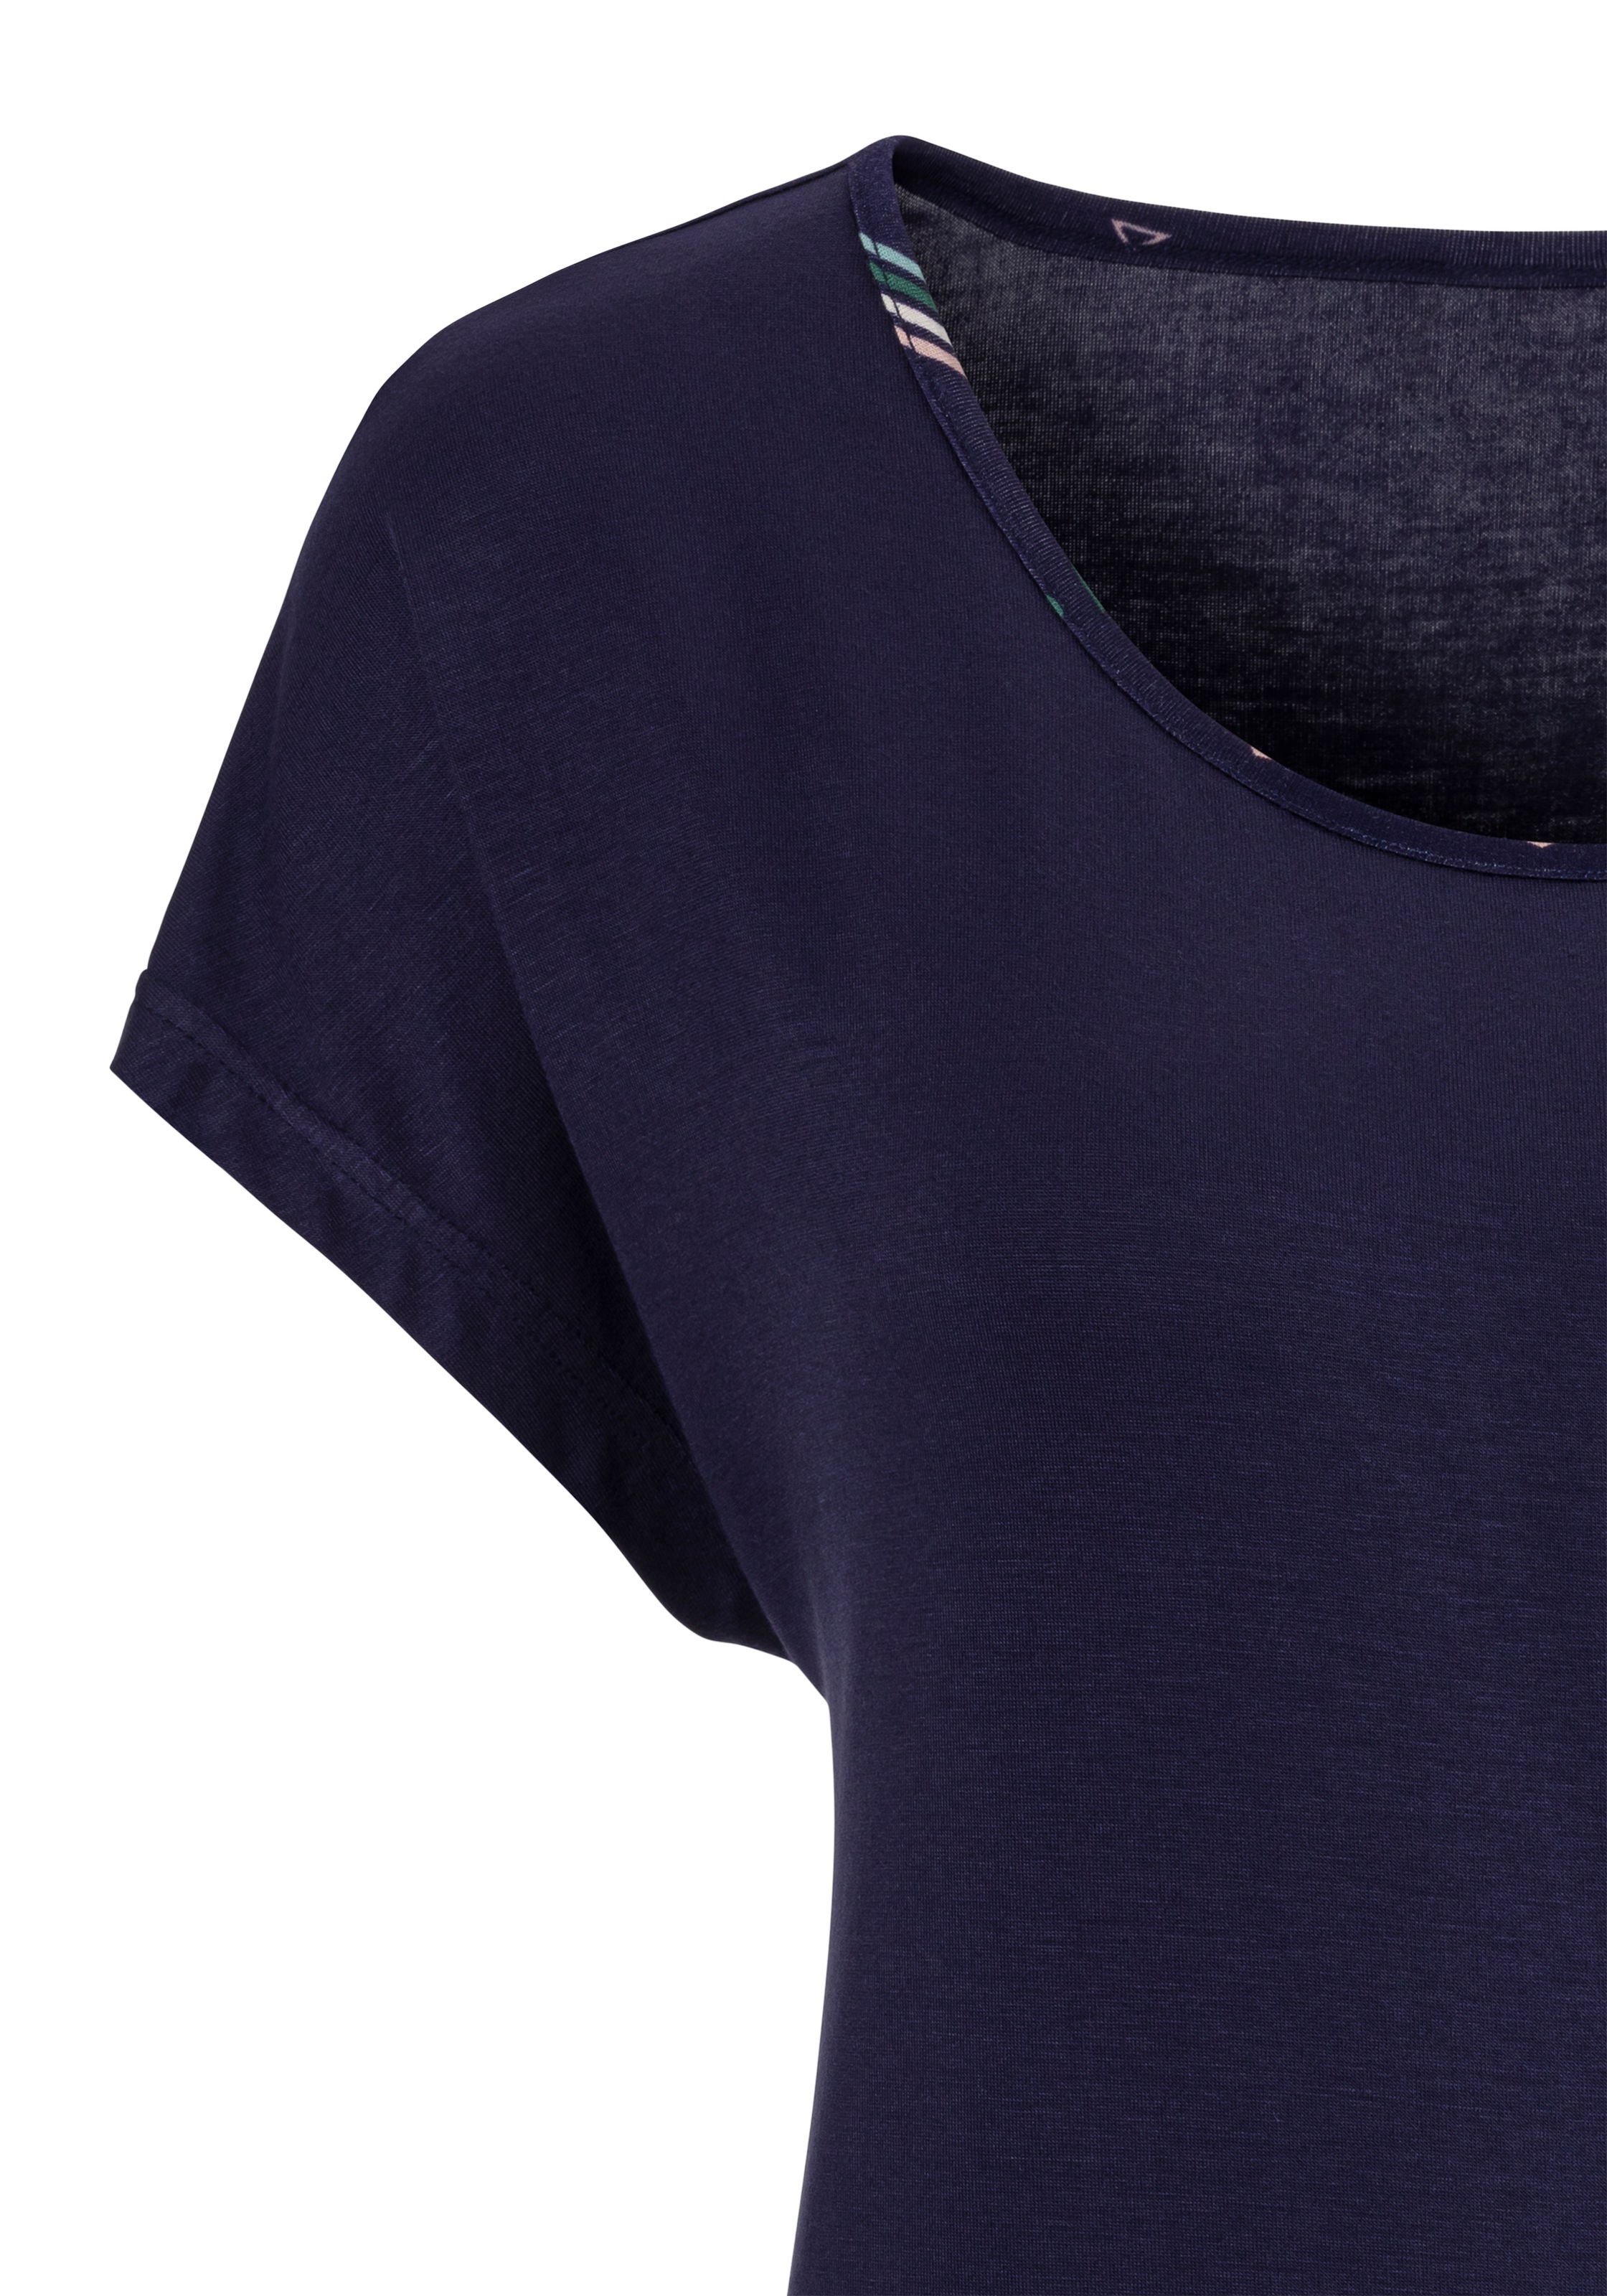 Arm | » mit Lingerie & Unterwäsche online LASCANA kaufen angeschnittenem T-Shirt, LASCANA Bademode,